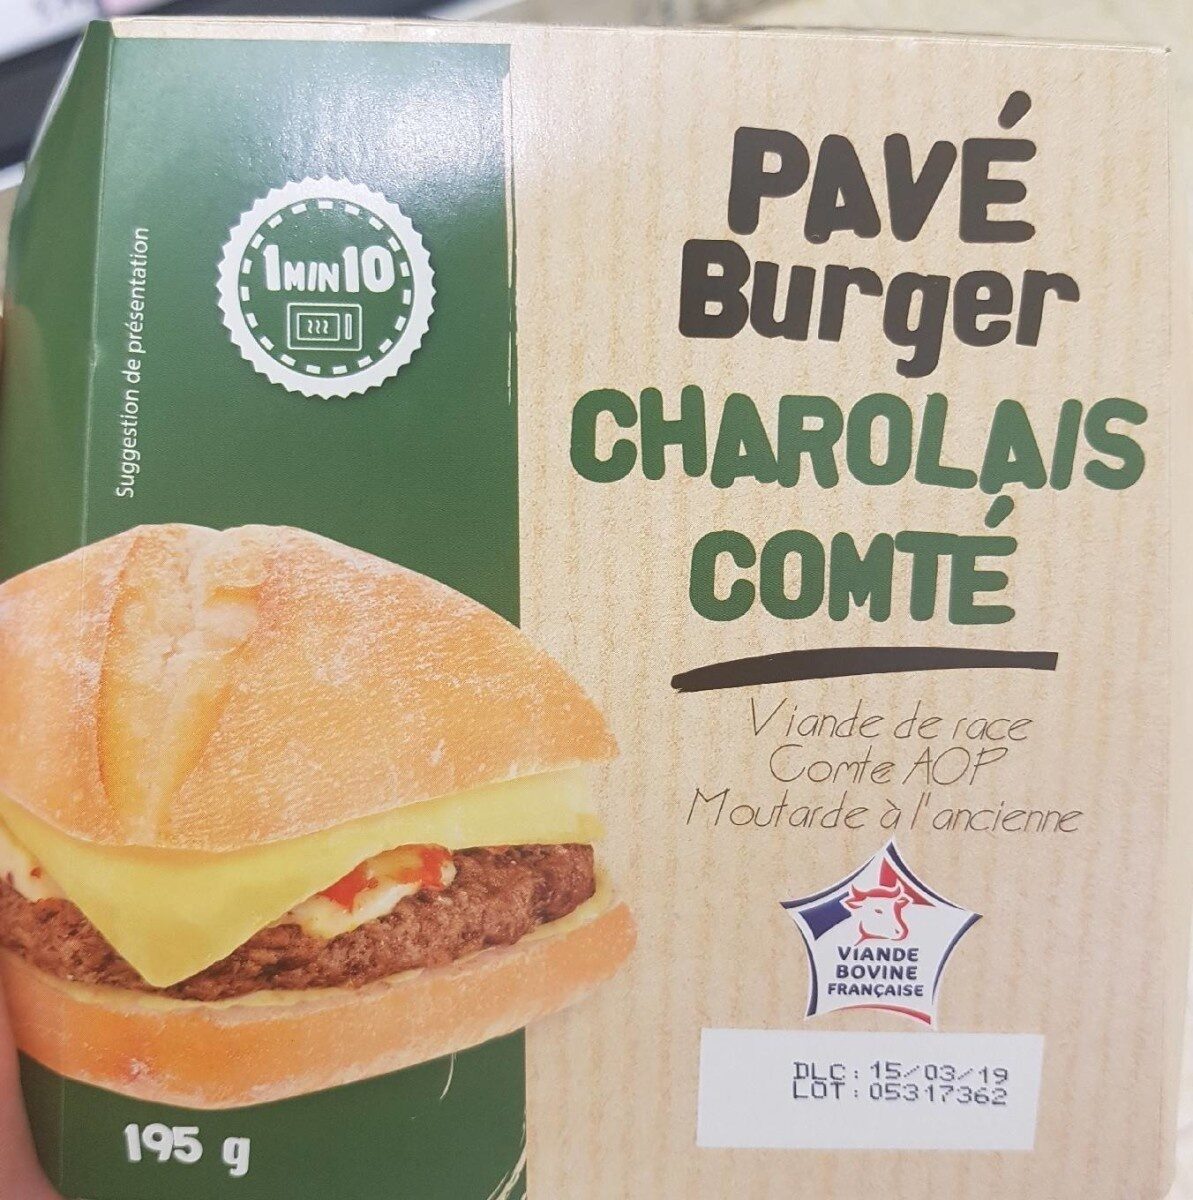 Pavé burger charolais comté - Product - fr